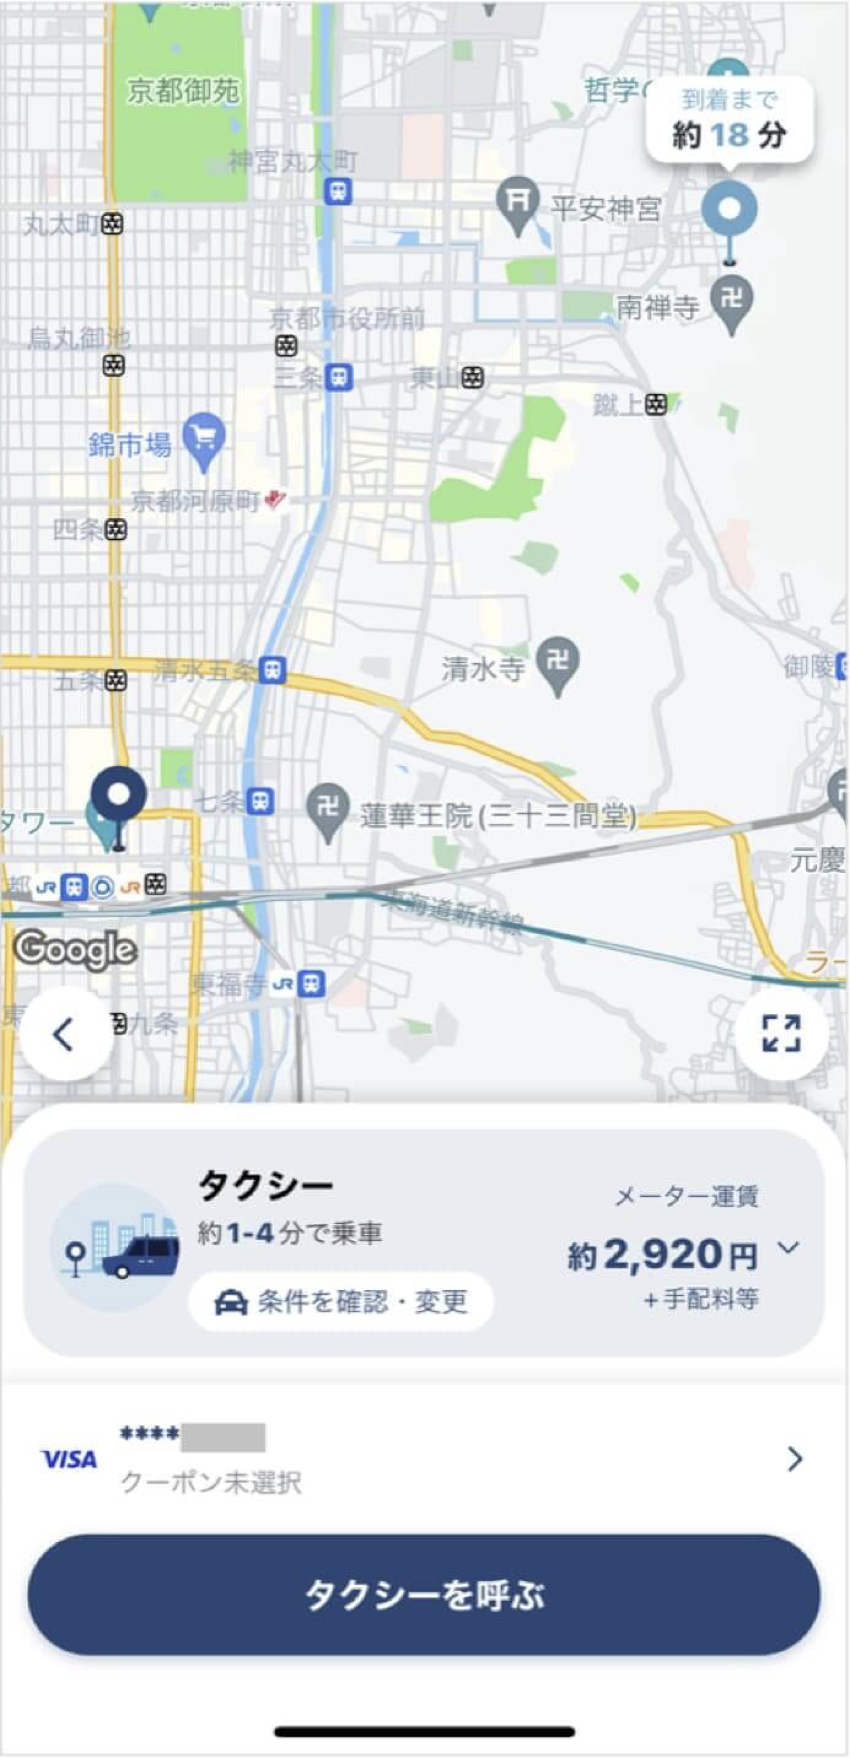 京都駅から永観堂までのタクシー料金・所要時間まとめ